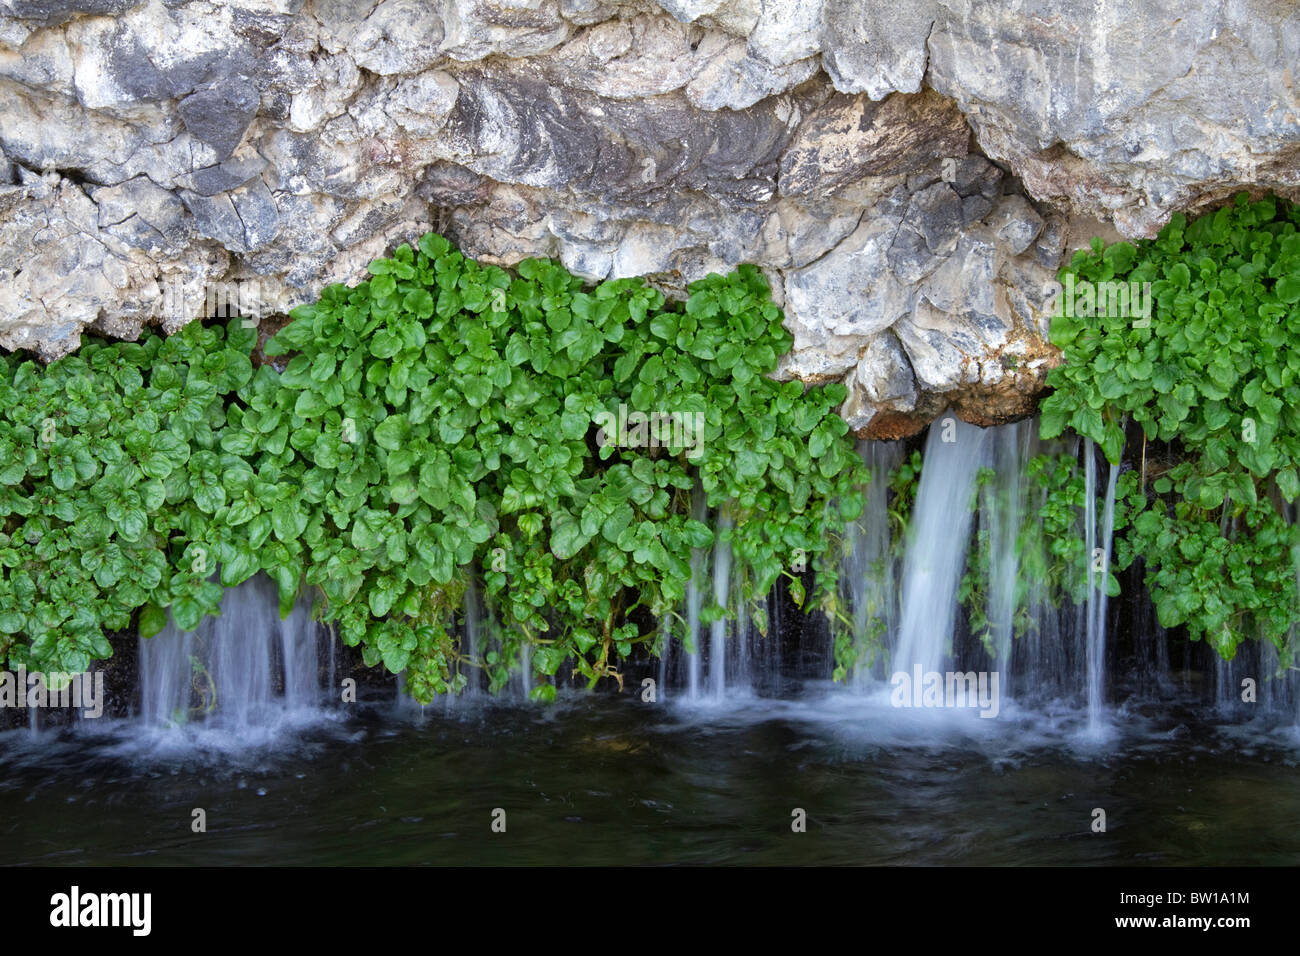 Brunnenkresse wächst auf Felsen mit natürlichem Quellwasser fließt bei tausend Federn am Snake River bei Hagerman Valley, Idaho, USA. Stockfoto